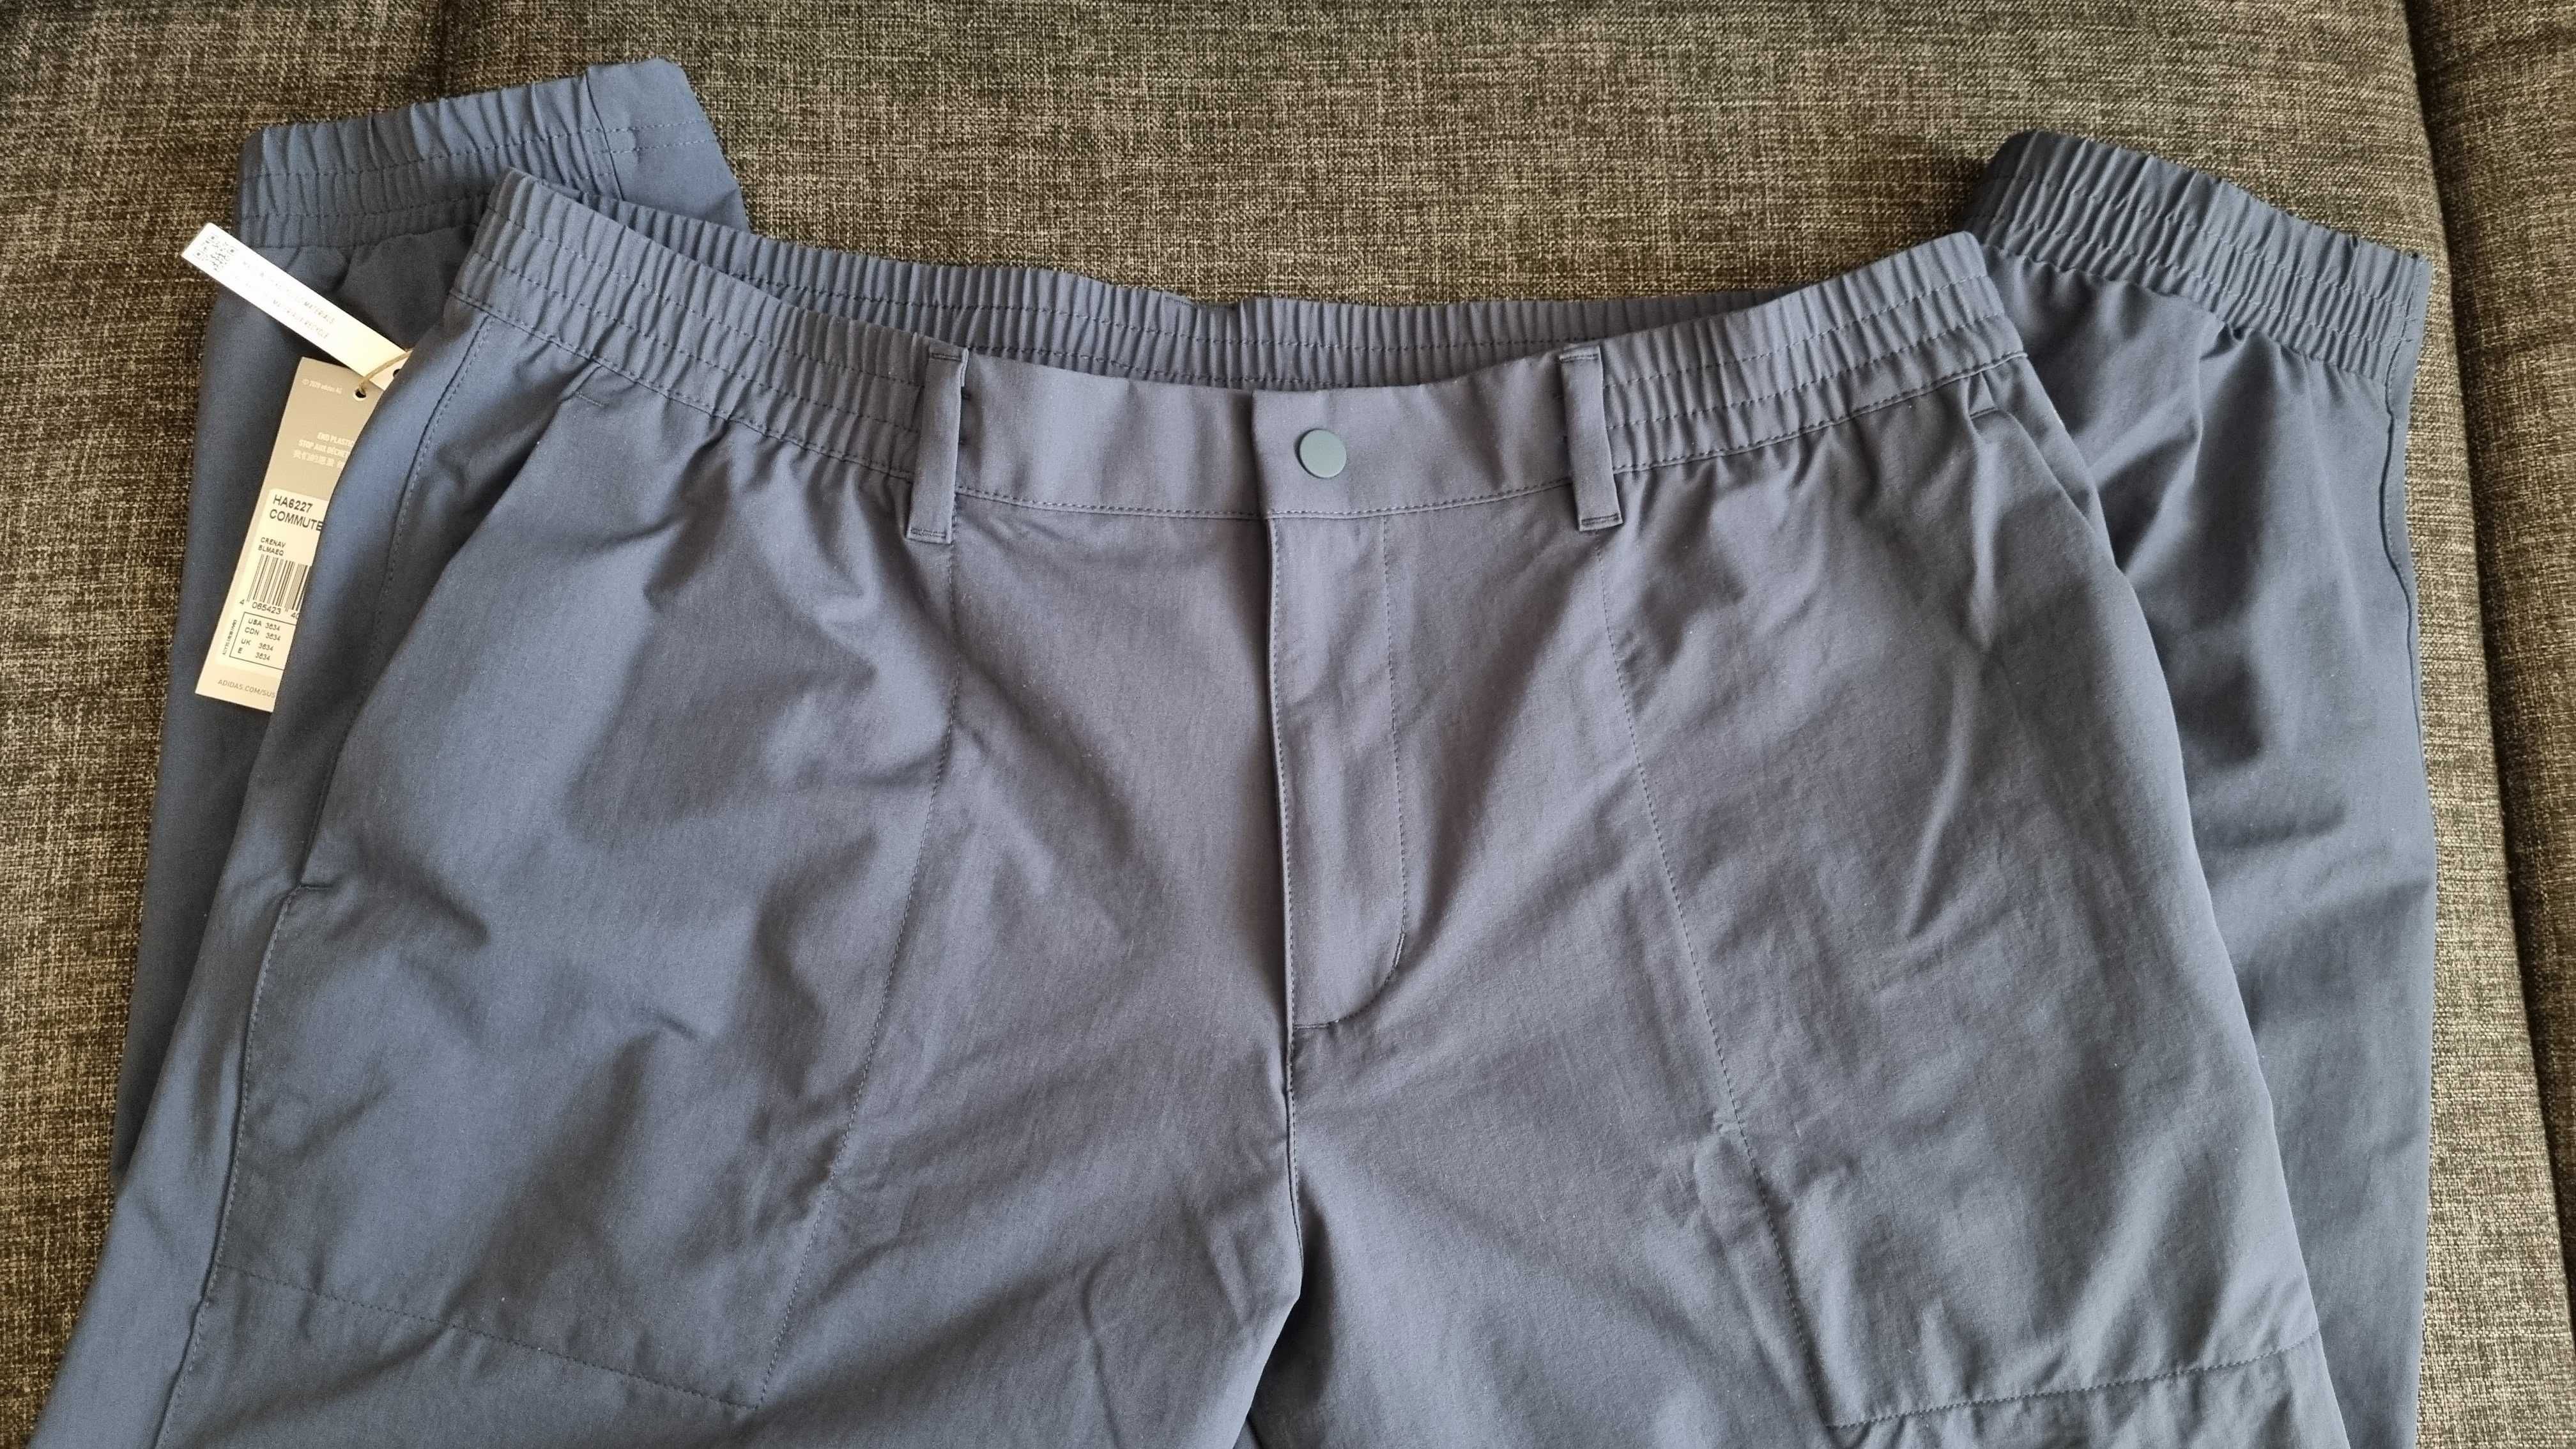 Мъжки спортен панталон Adidas Go-To Commuter Pants, размер 36/34